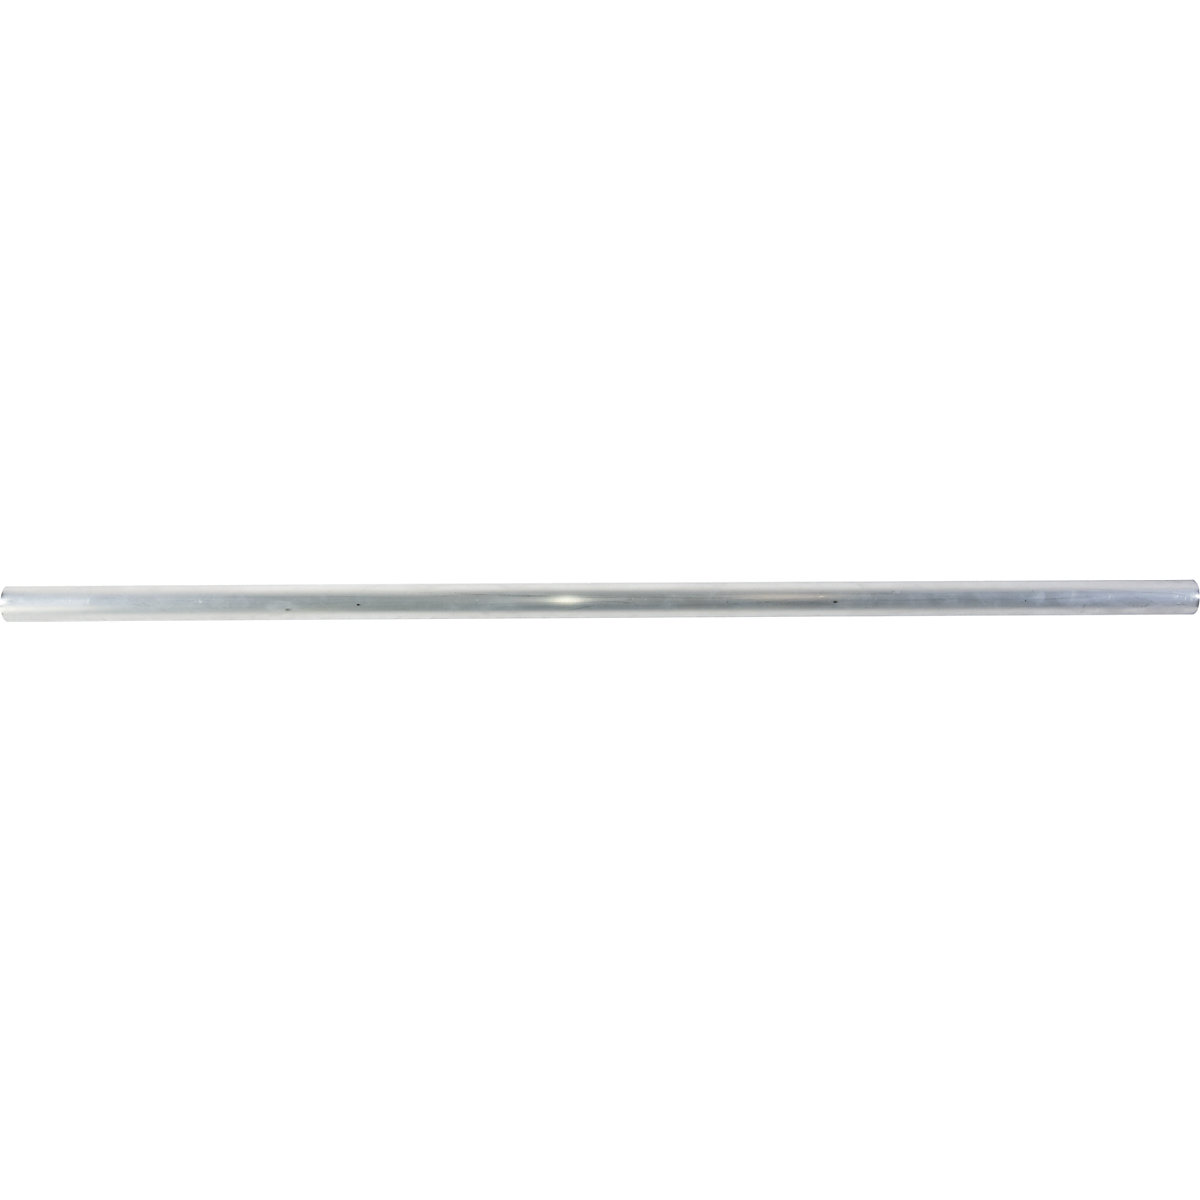 Guide tubolari – KRAUSE, lunghezza 3000 mm, alluminio anodizzato-4